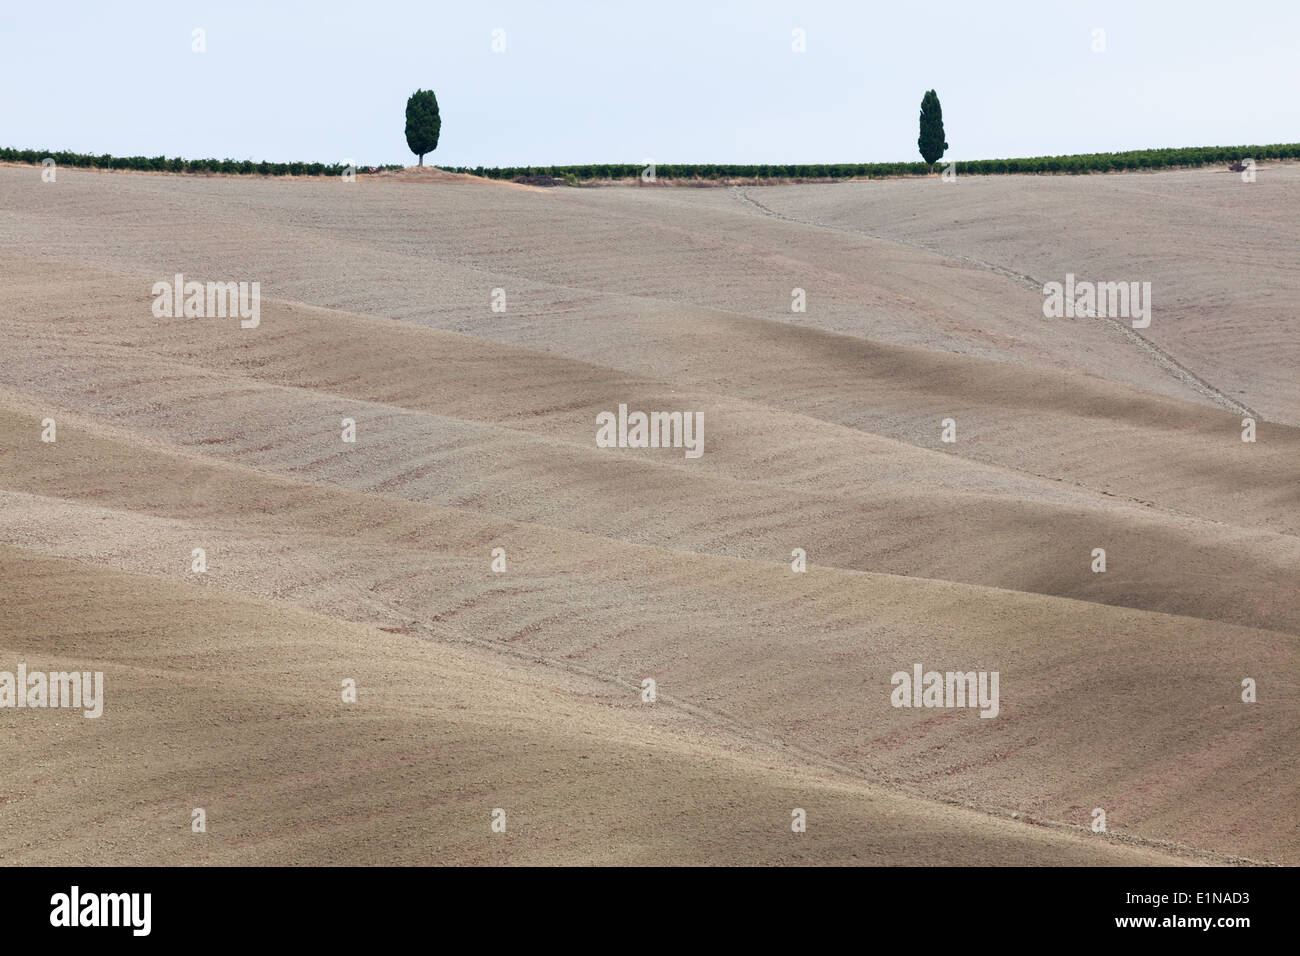 Paesaggio con due alberi e campi arati nella regione di Torrenieri, provincia di Siena, Toscana, Italia Foto Stock